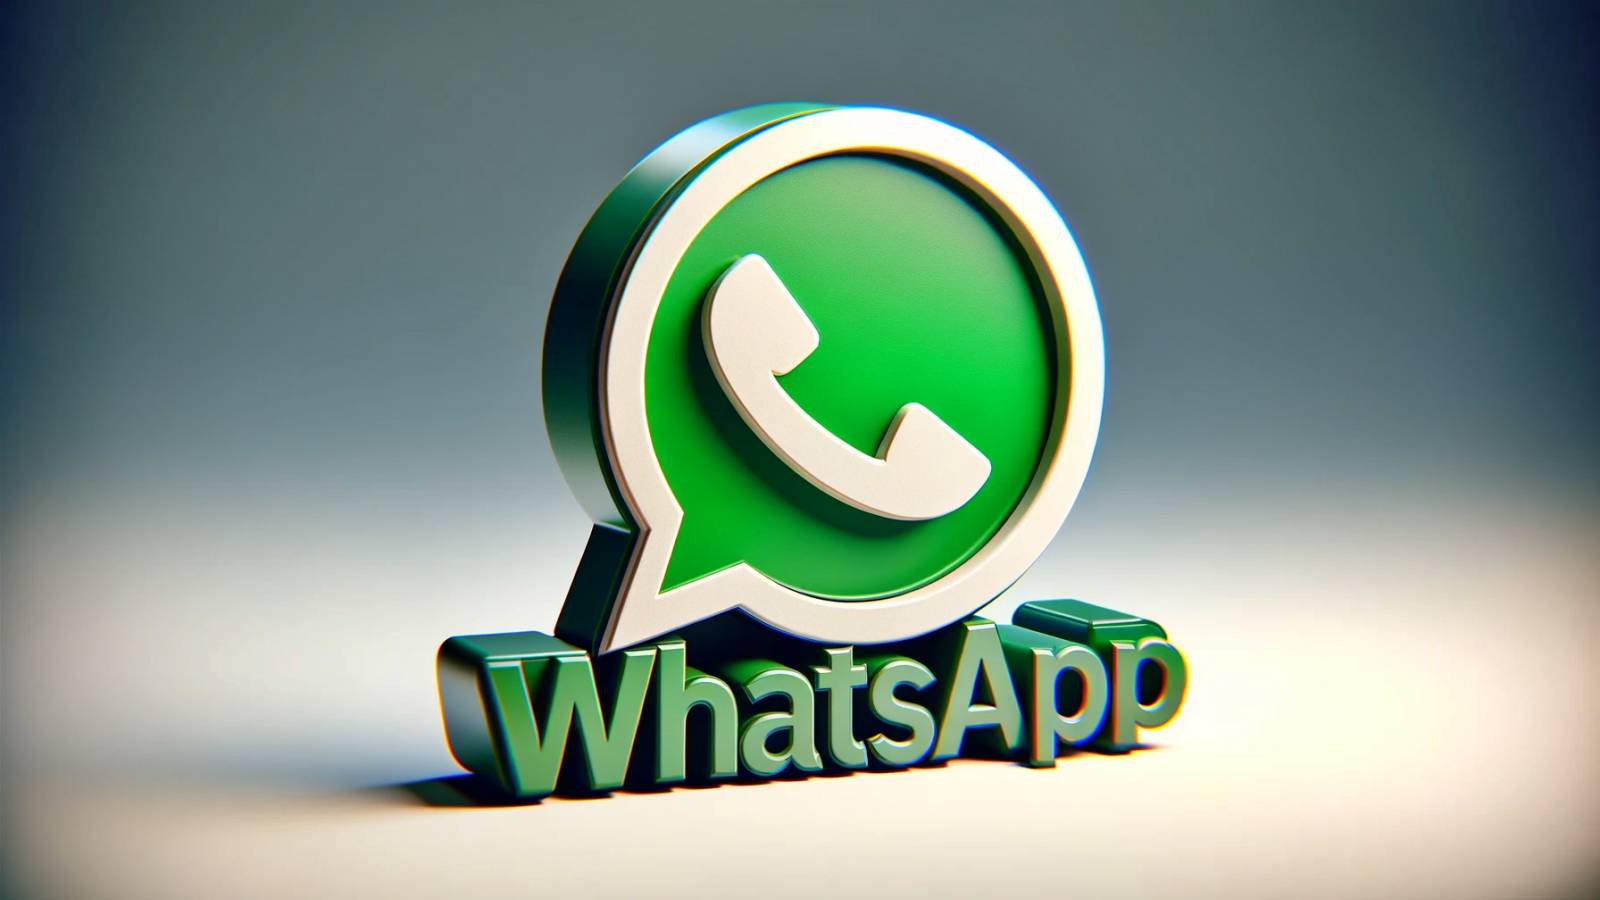 WhatsApp met à jour l’application iPhone Android Actualités importantes